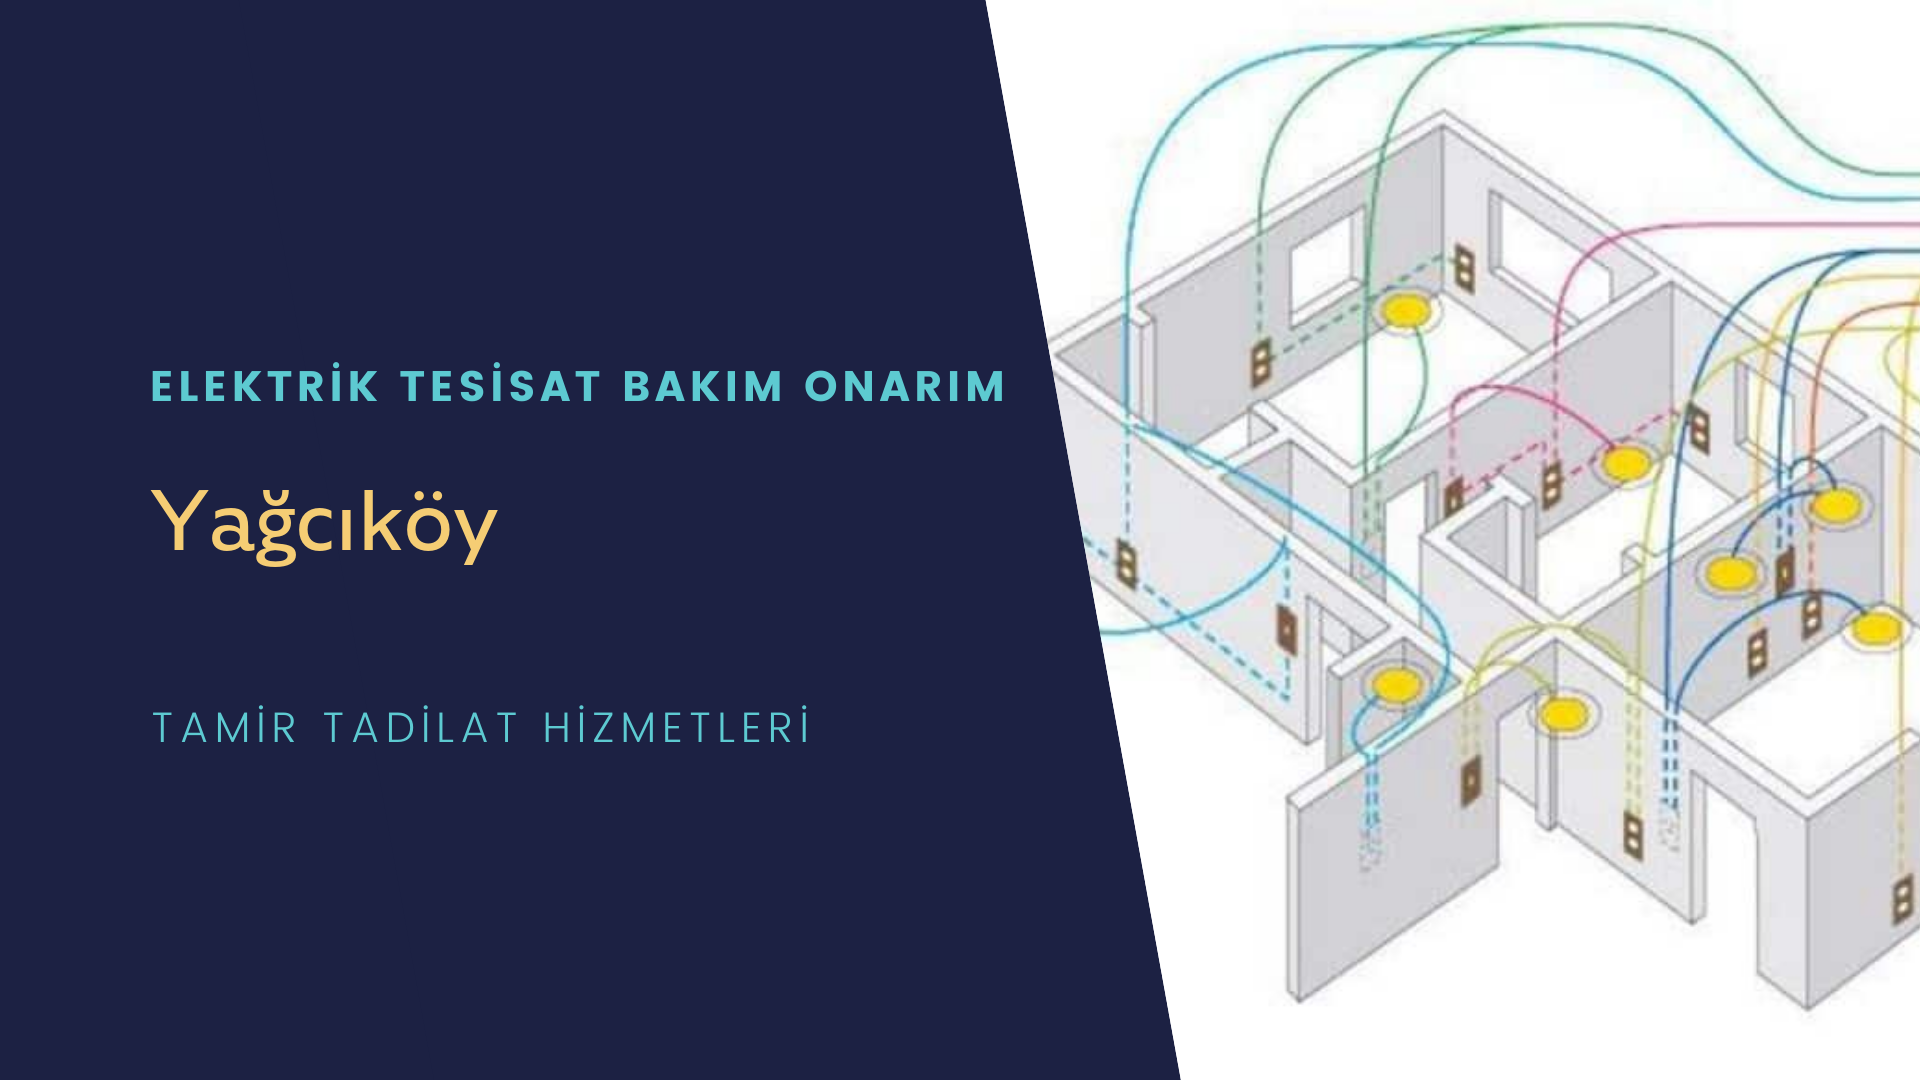 Yağcıköy'de elektrik tesisatı ustalarımı arıyorsunuz doğru adrestenizi Yağcıköy elektrik tesisatı ustalarımız 7/24 sizlere hizmet vermekten mutluluk duyar.